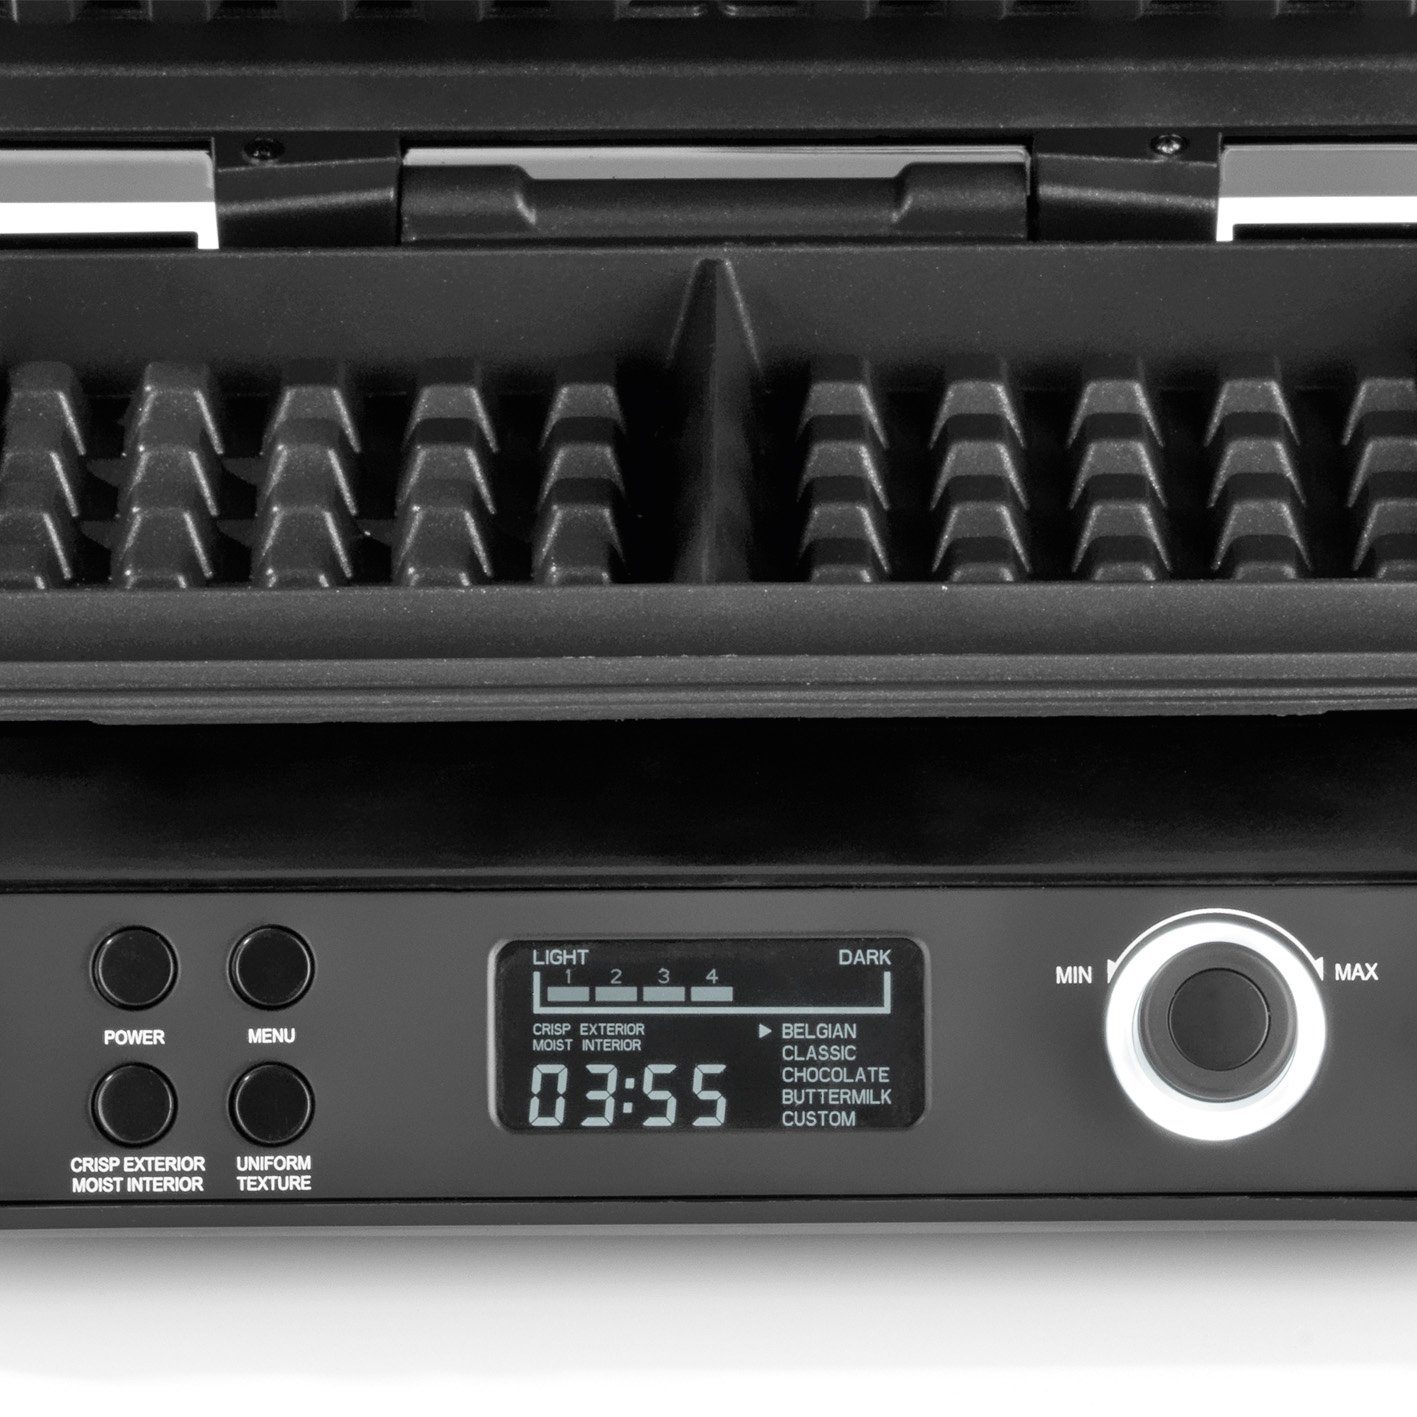 Waffeleisen 5 7 Programme LCD schwarz Midnight Bräunungsstufen N8WERK Edition W, 1600 Waffelautomat Display,